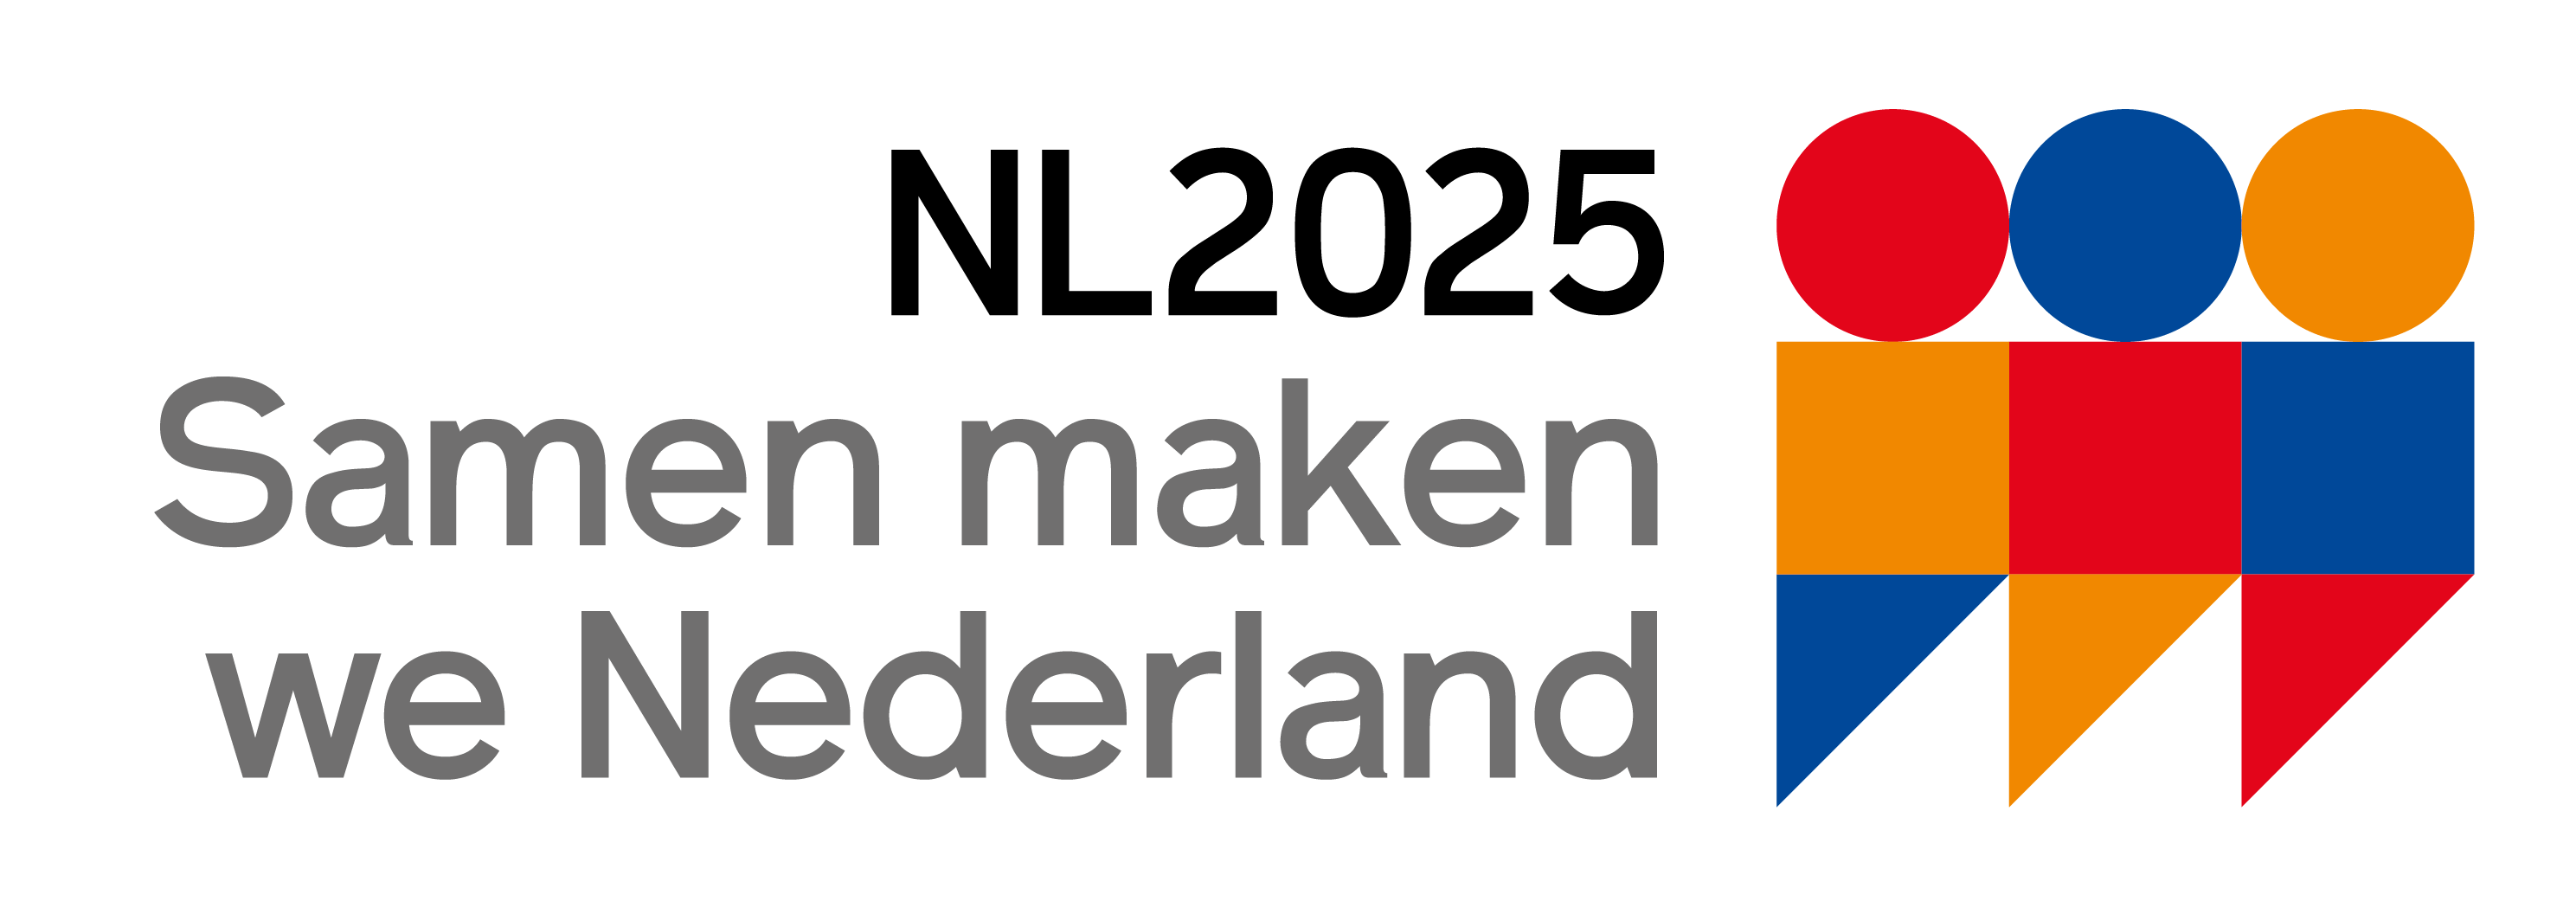 NL2025